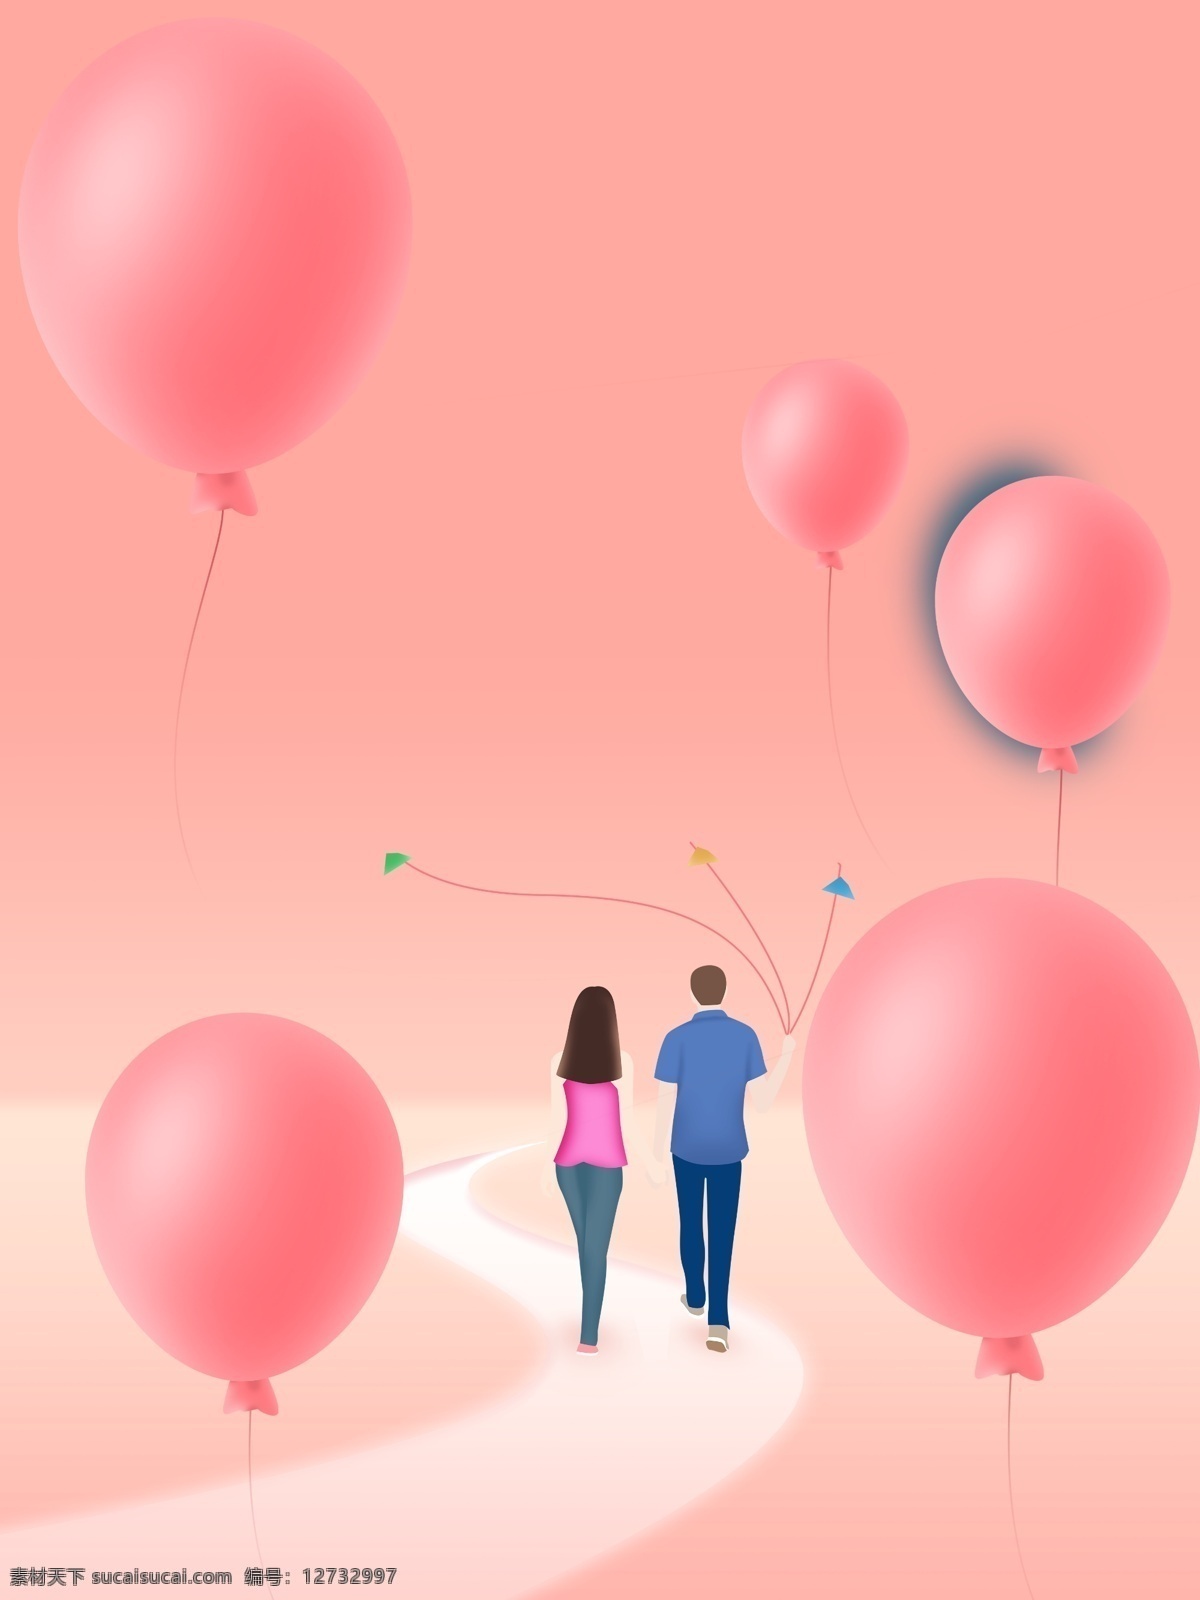 简约 唯美 浪漫 粉色 情侣 气球 广告 背景 广告背景 粉嫩 清新 少女心 手绘